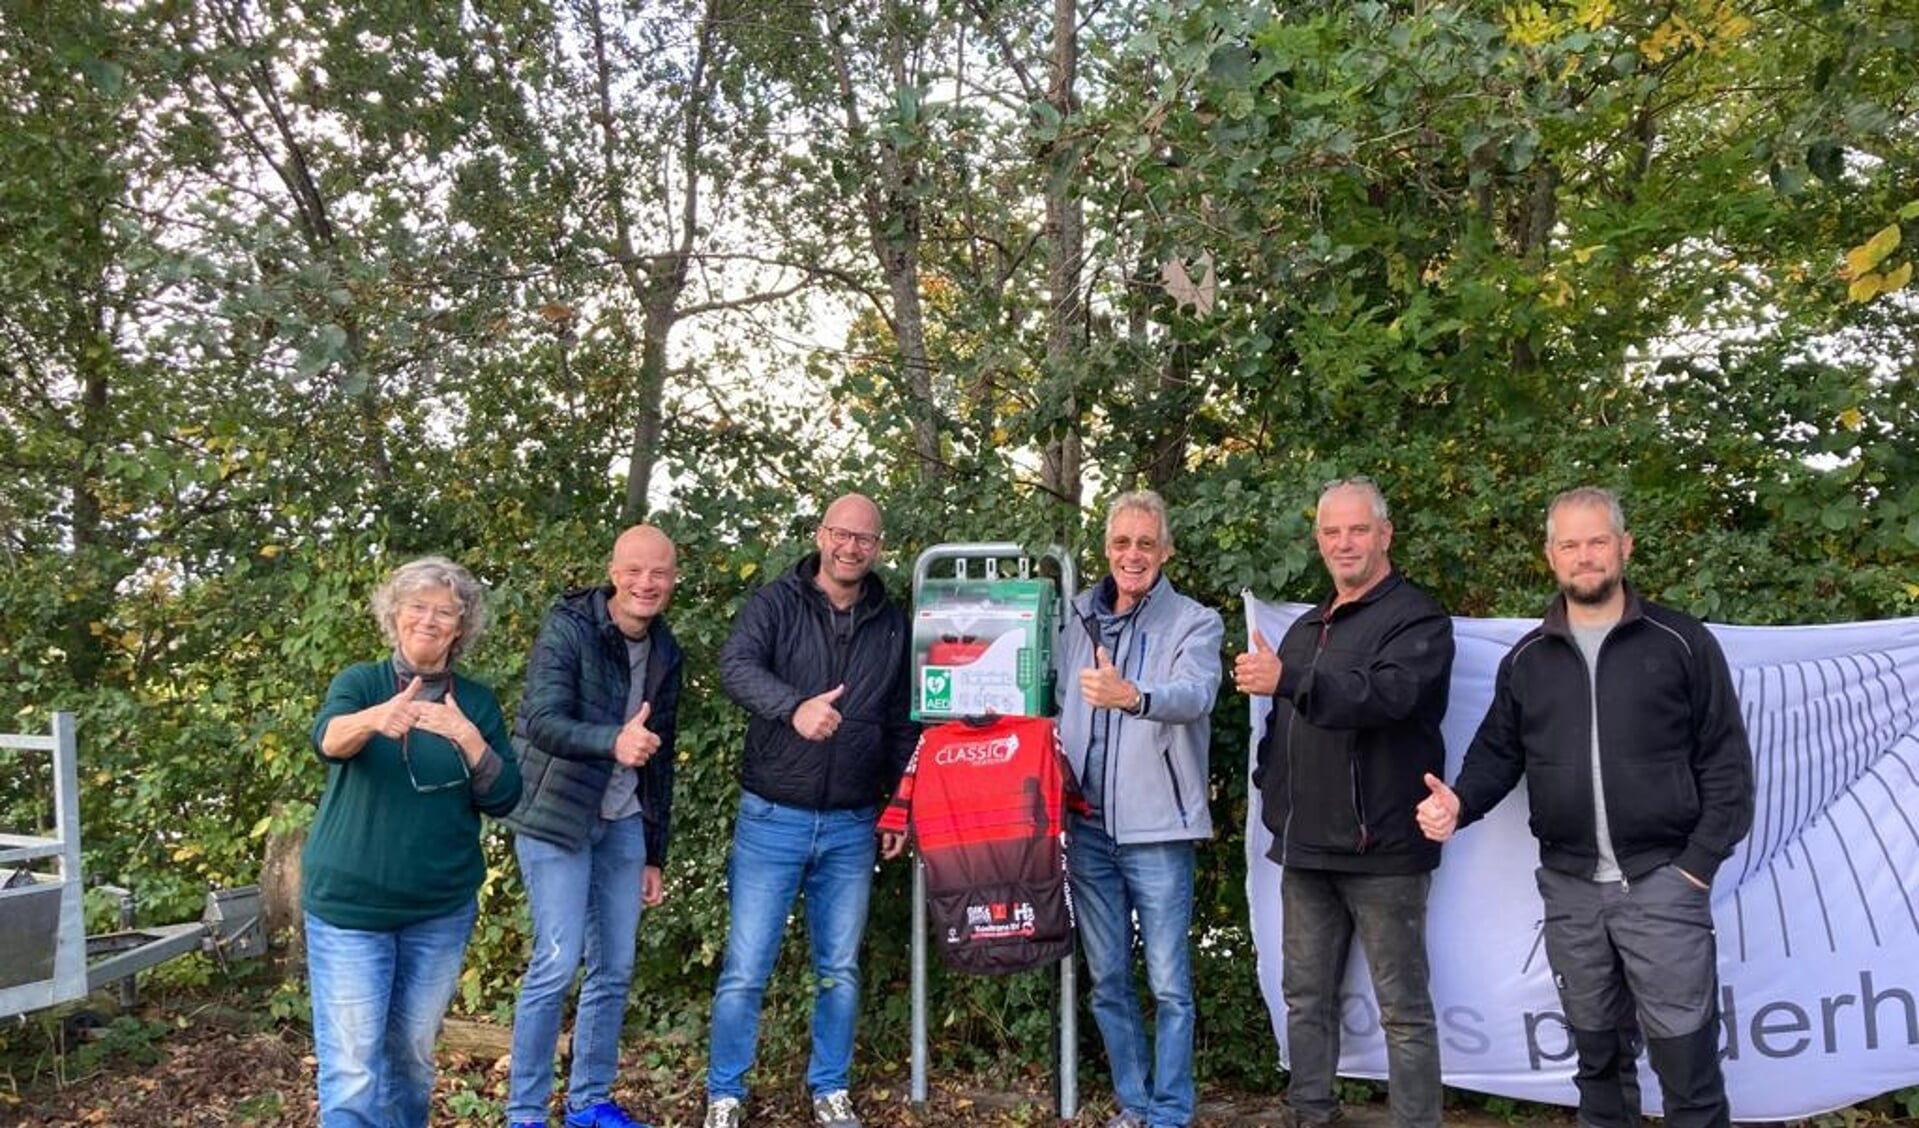 Bestuursleden van Stichting Jacco Versluis en Ons Polderhart blij met de AED in de polder